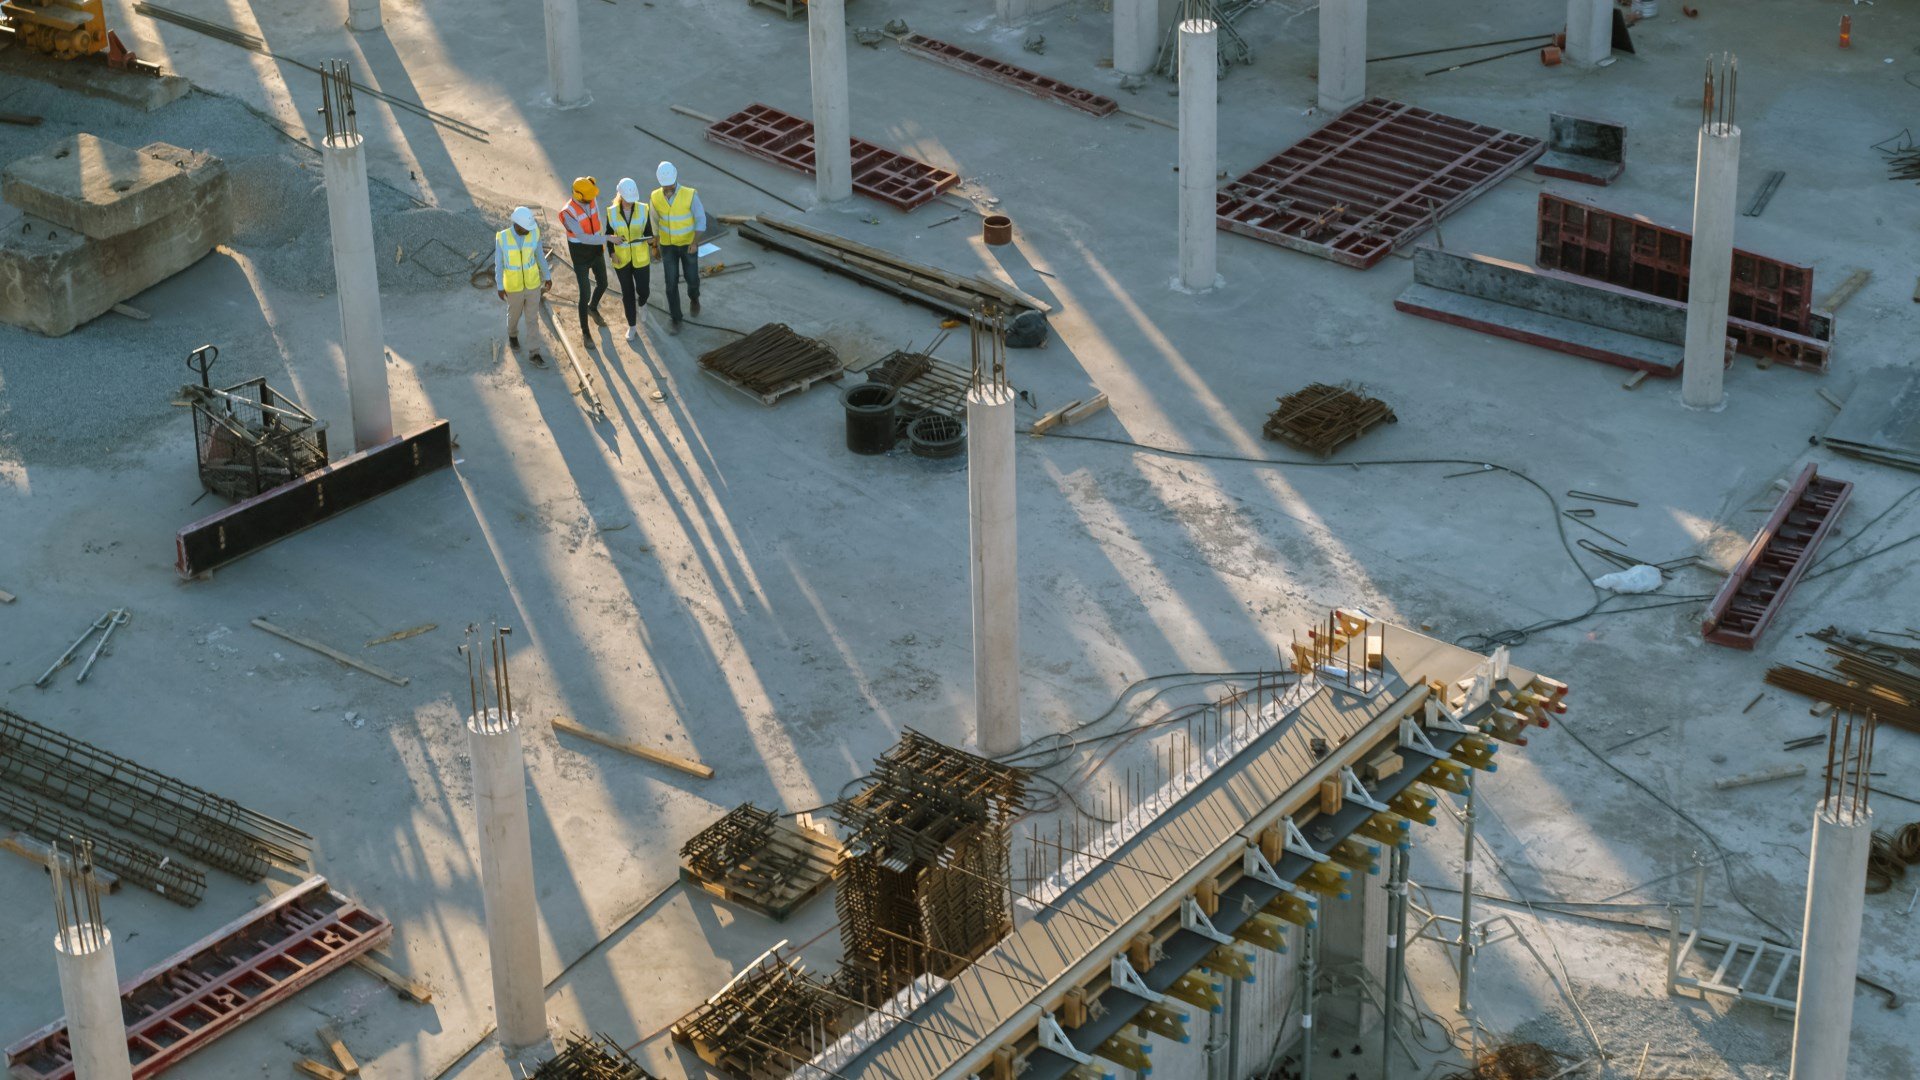 Photo d'un chantier avec quatre ouvriers marchant dans un bâtiment en construction. Des matériaux et des outils sont visibles posés sur le sol.